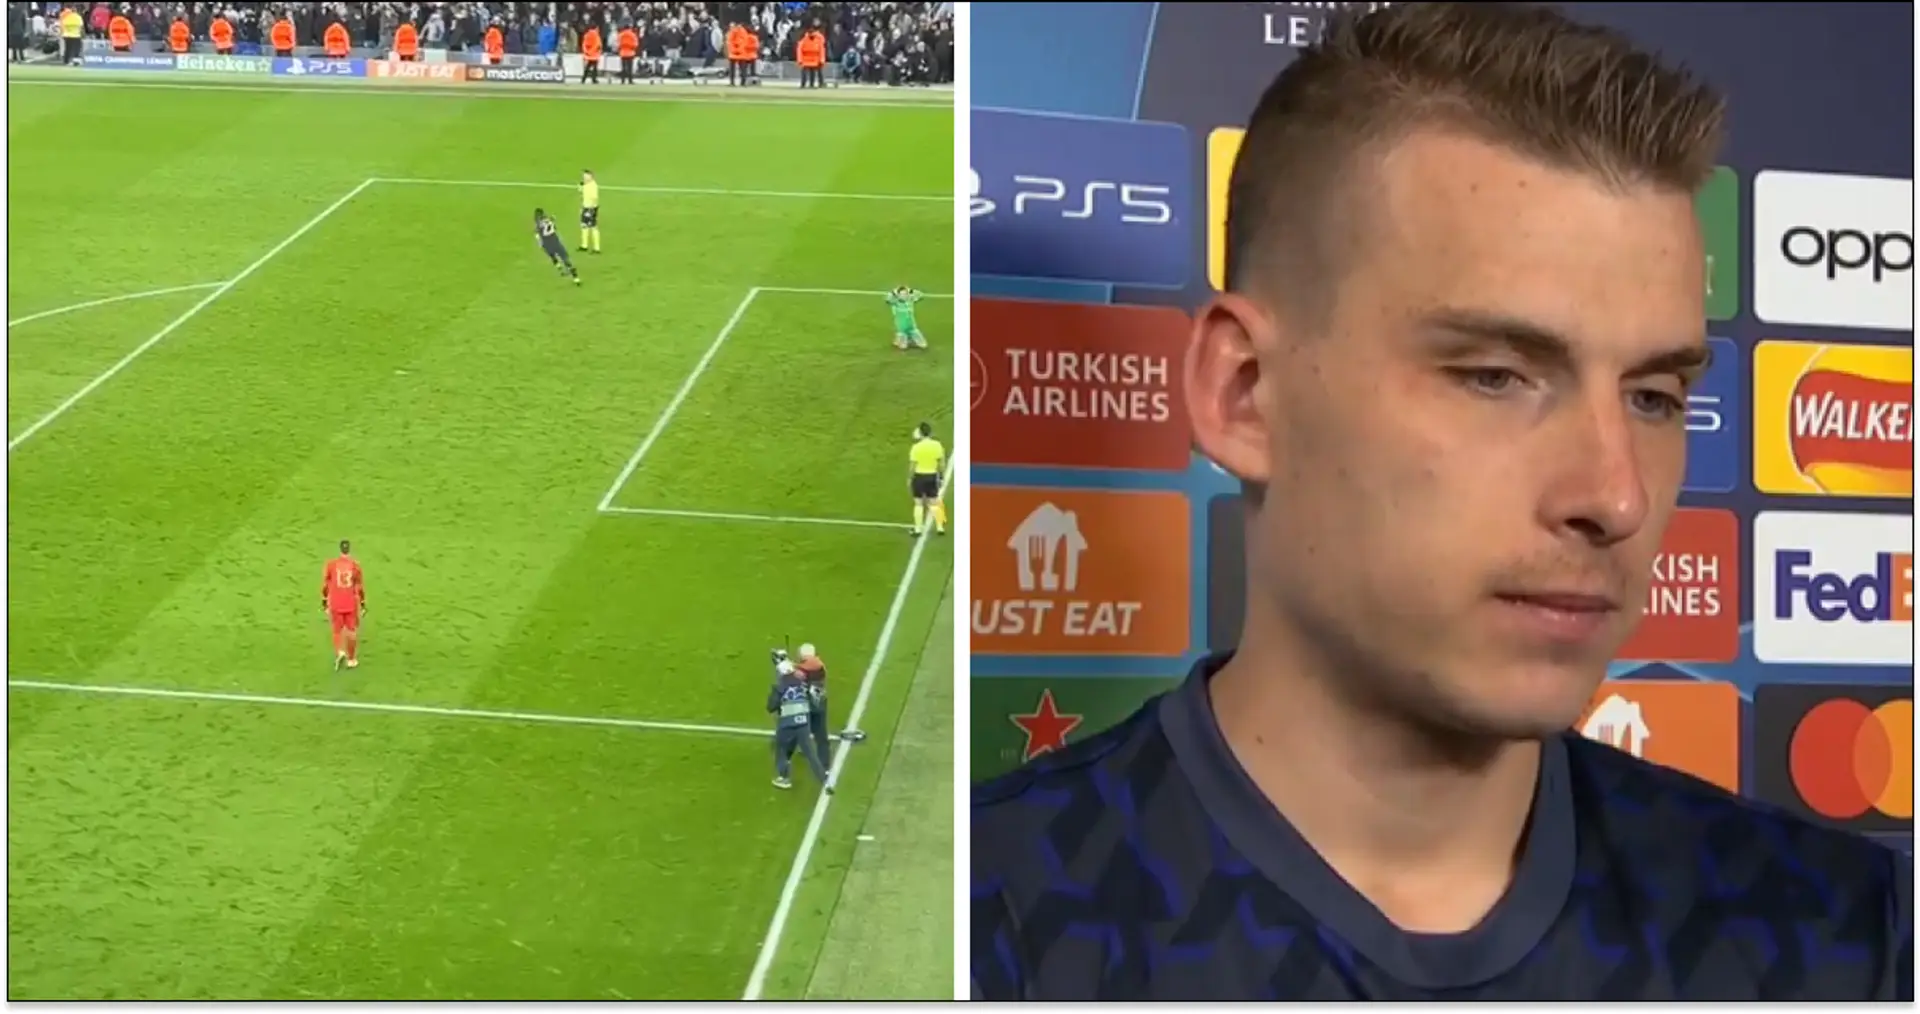 'Quería salvar otro disparo': la reacción de Lunin ante el penalti de victoria de Rudiger vs City grabada por la cámara